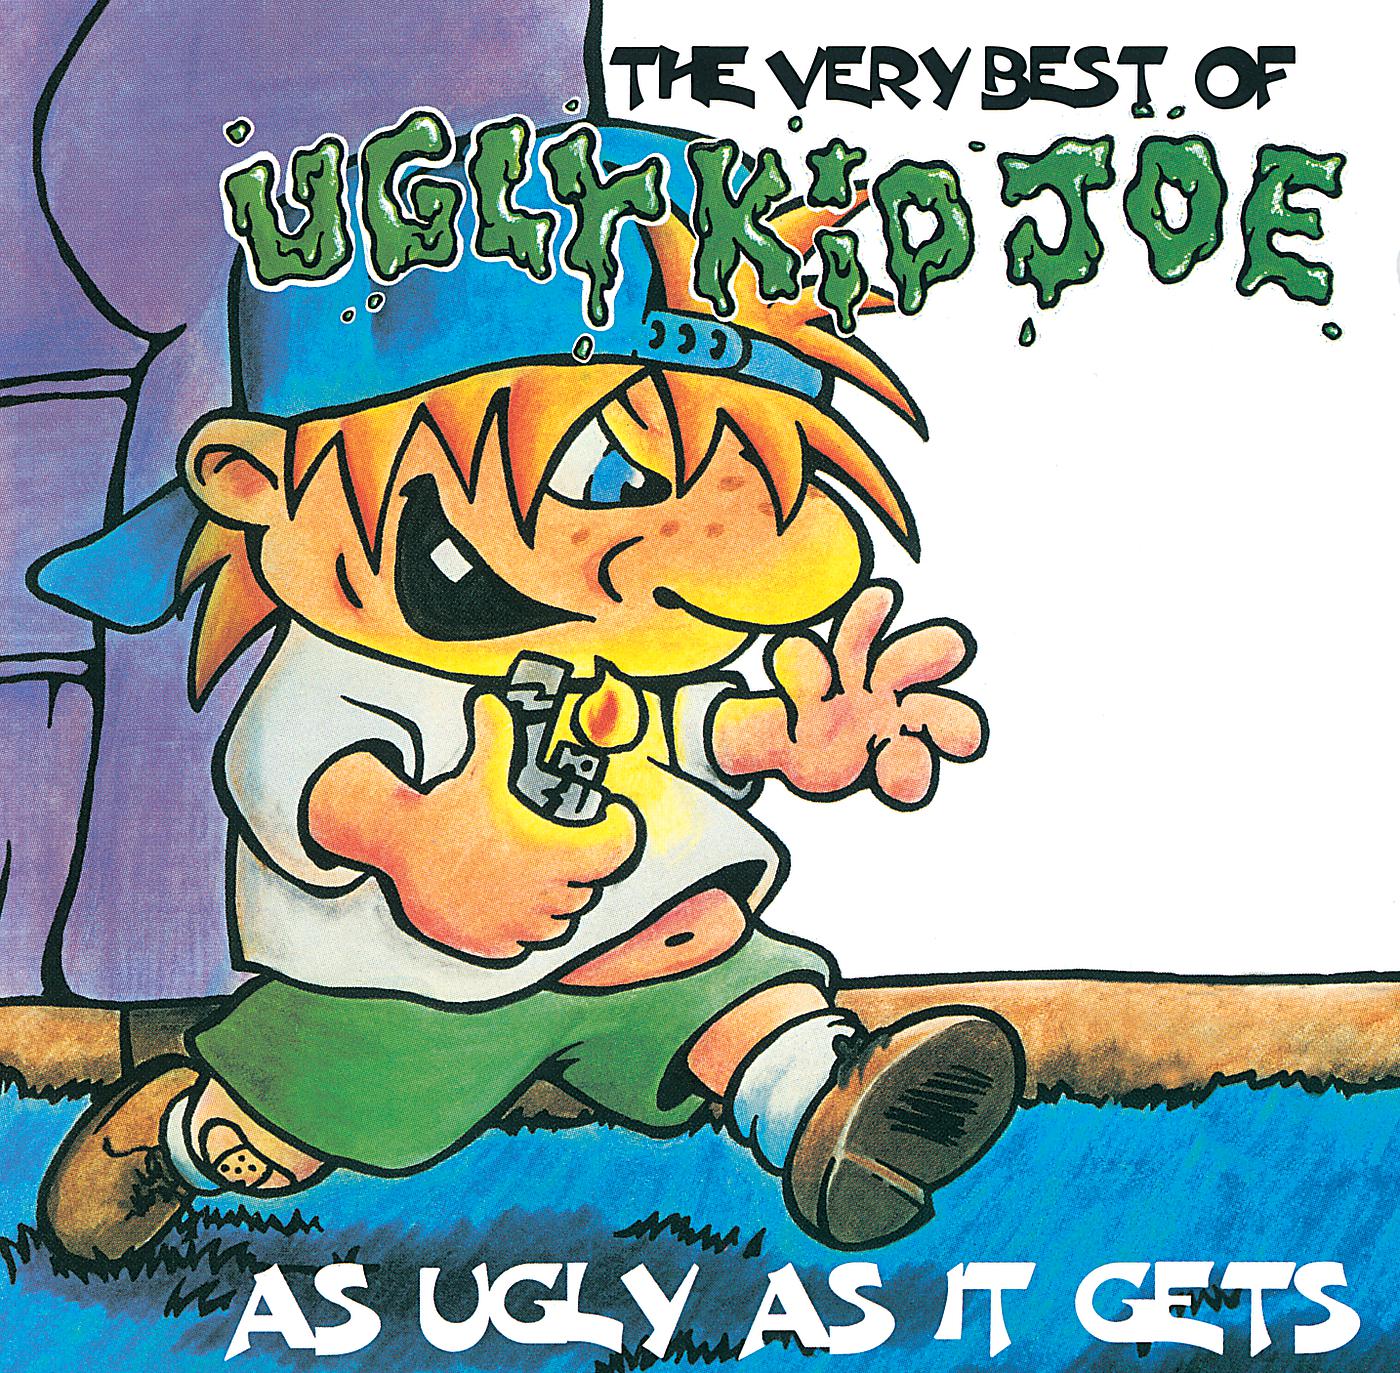 Агли кид. Группа агли КИД Джо. Ugly Kid Joe - 2002 - the collection. Ugly Kid Joe – as ugly as it gets: the very best of. Ugly Kid Joe DVD обложка.